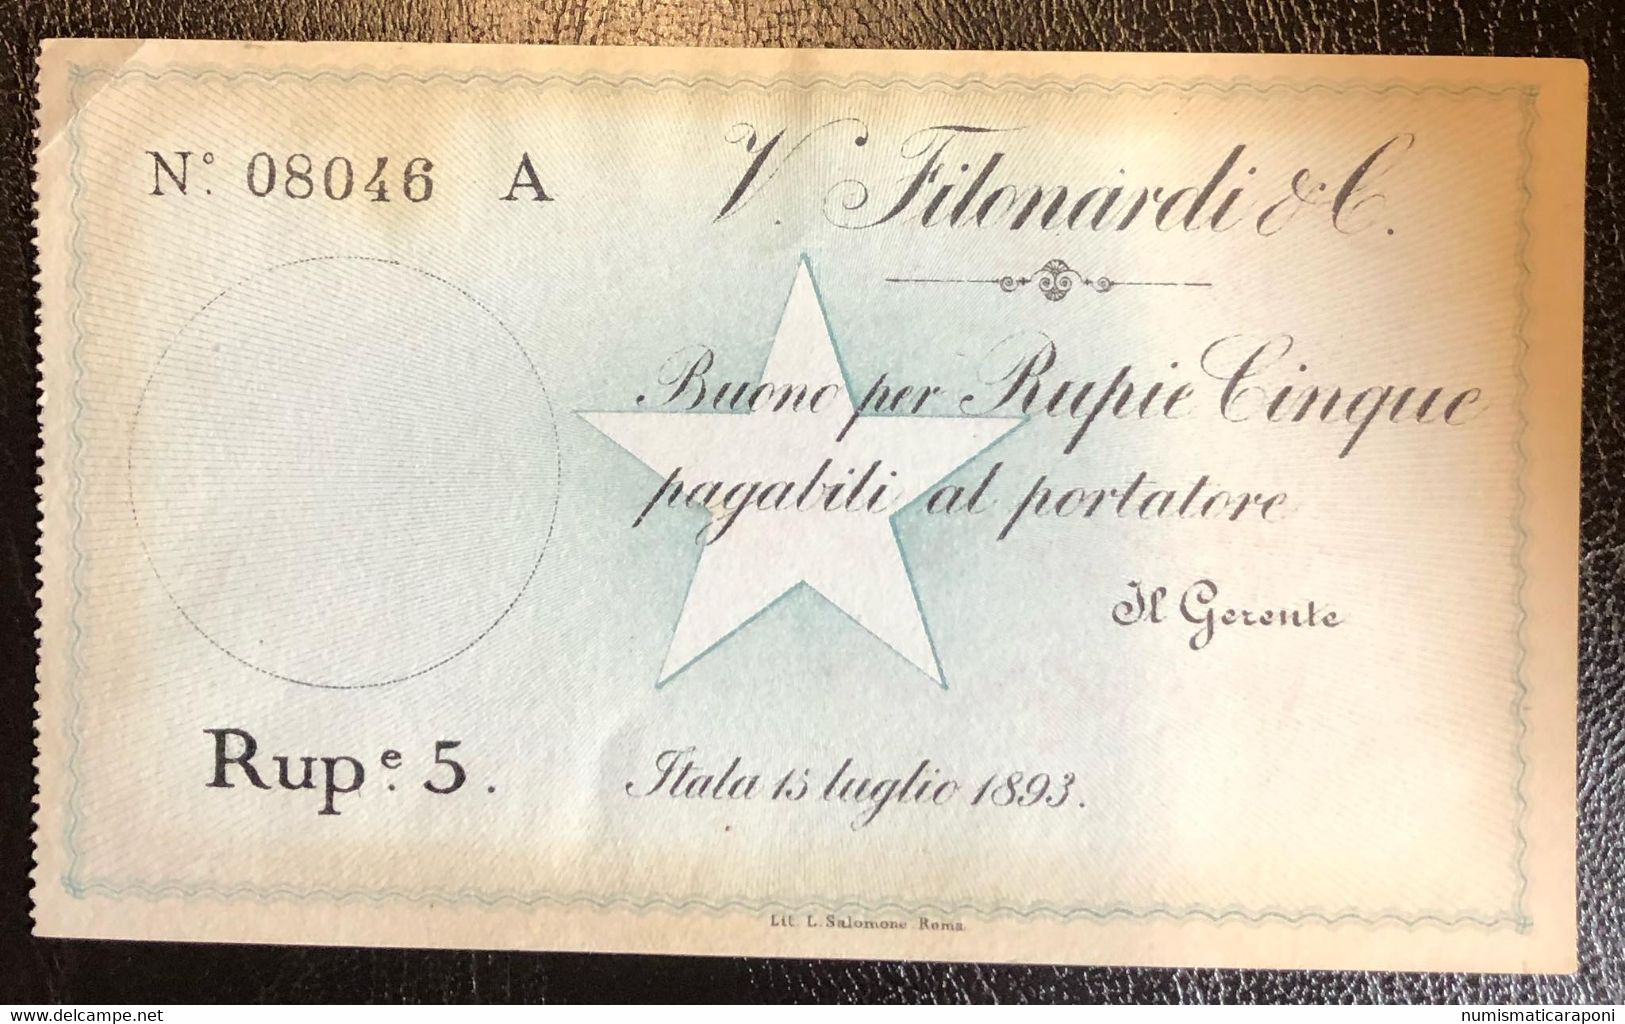 COMPAGNA ITALIANA PER IL BENADIR SOMALIA VINCENZO FILONARDI E C. 1893 5 RUPIE NON EMESSO R5 RRRRR Lotto.2475 - Somalie